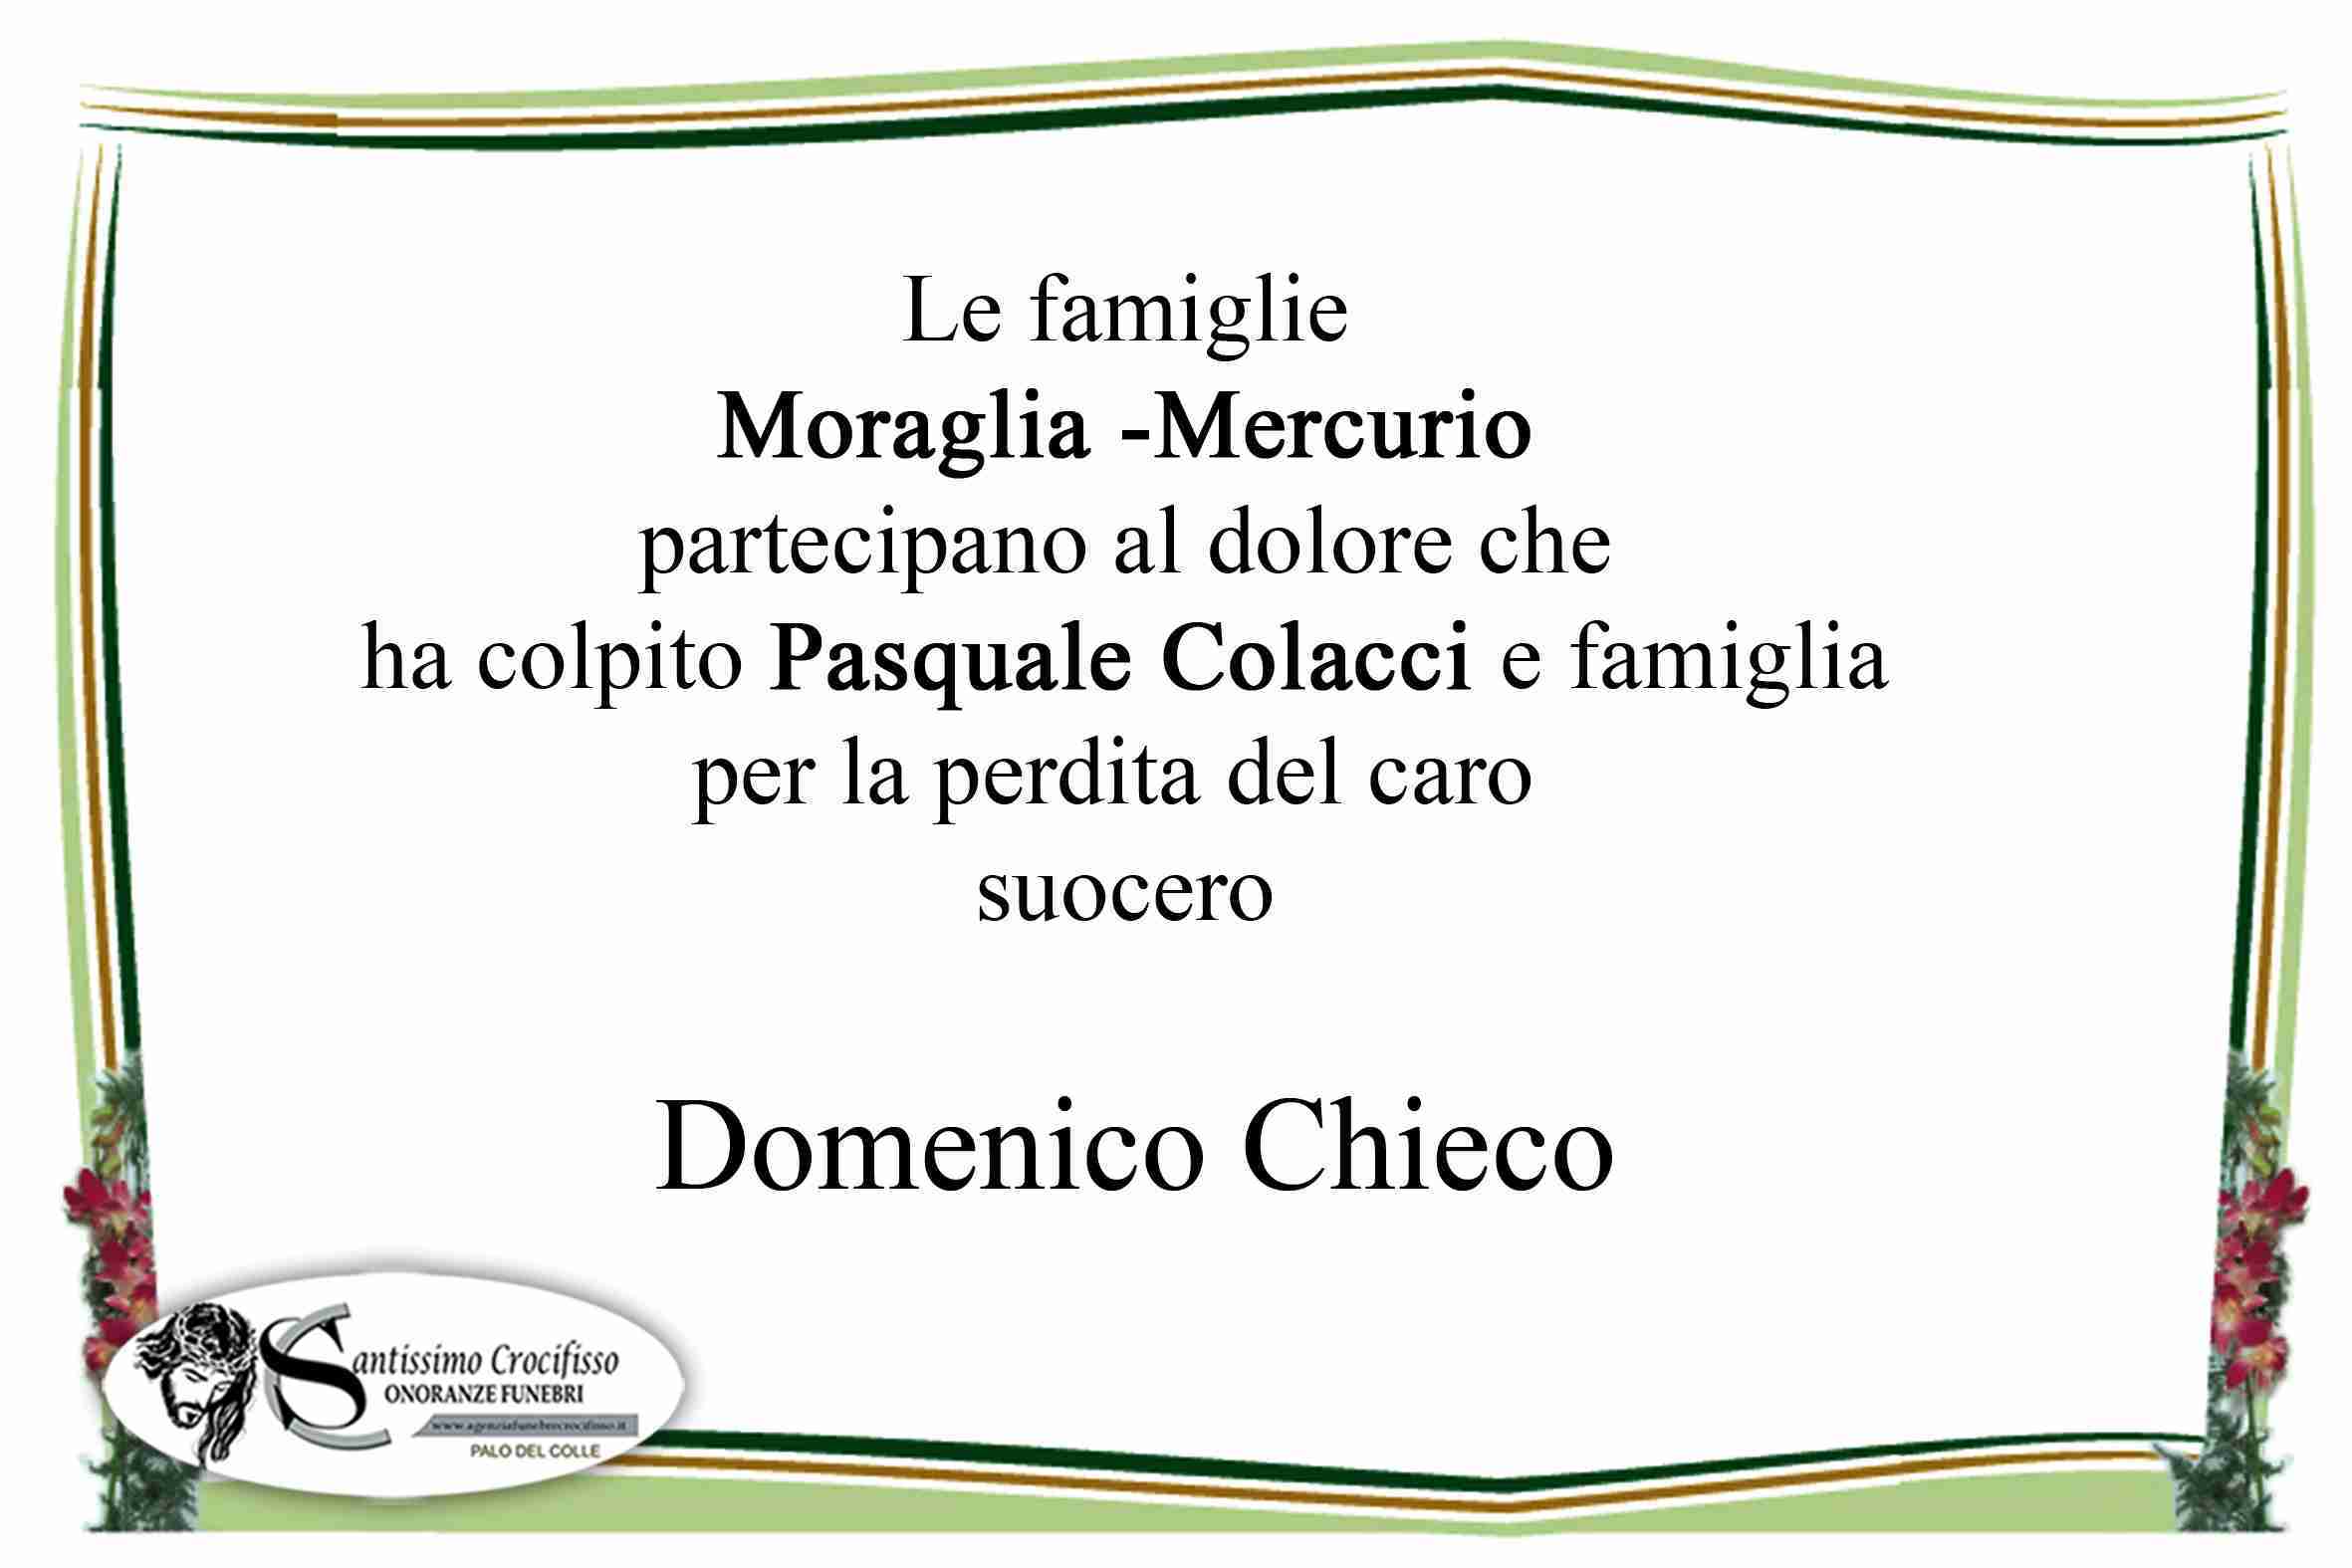 Domenico Chieco